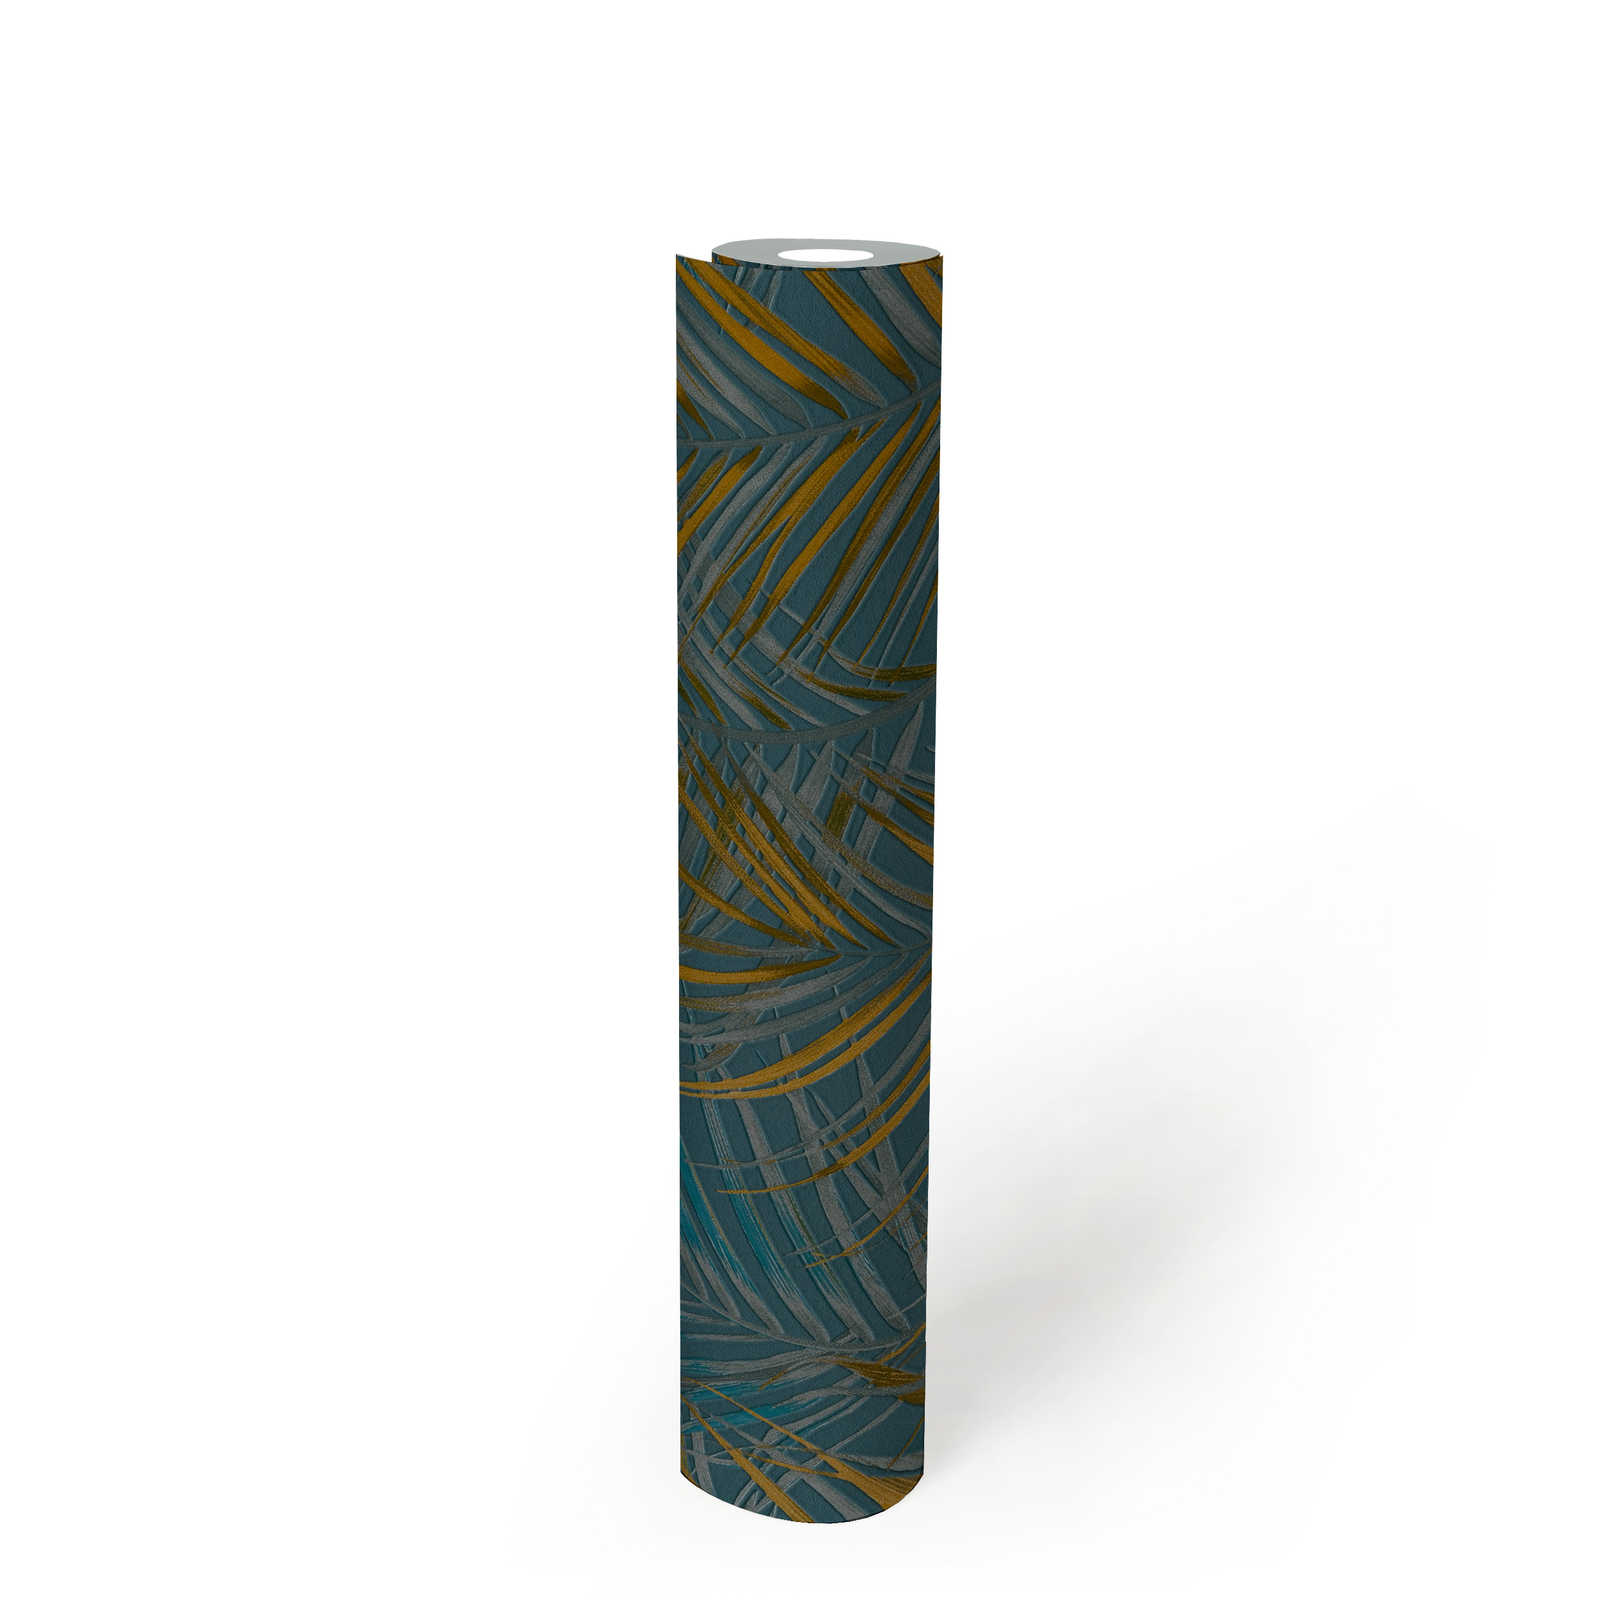             Papier peint motif jungle avec feuilles de palmier - bleu, jaune, pétrole
        